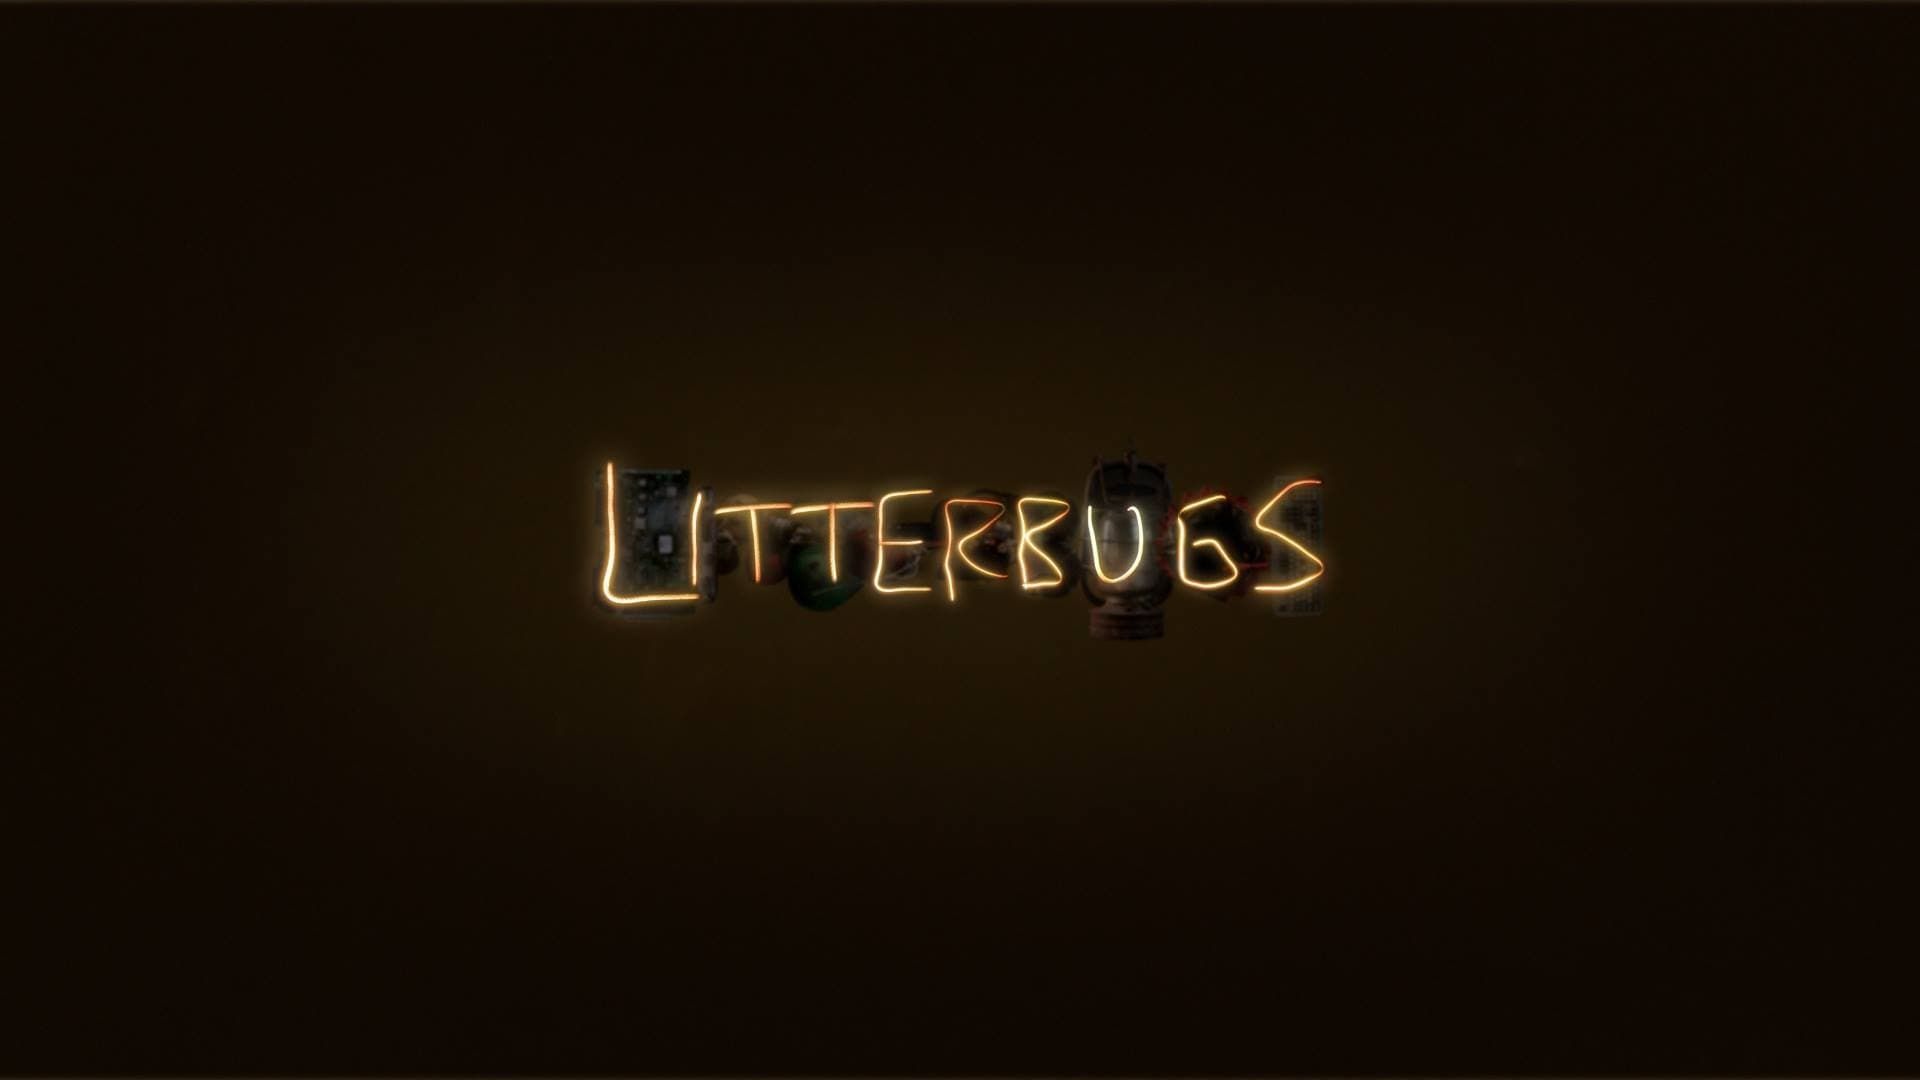 Litterbugs background